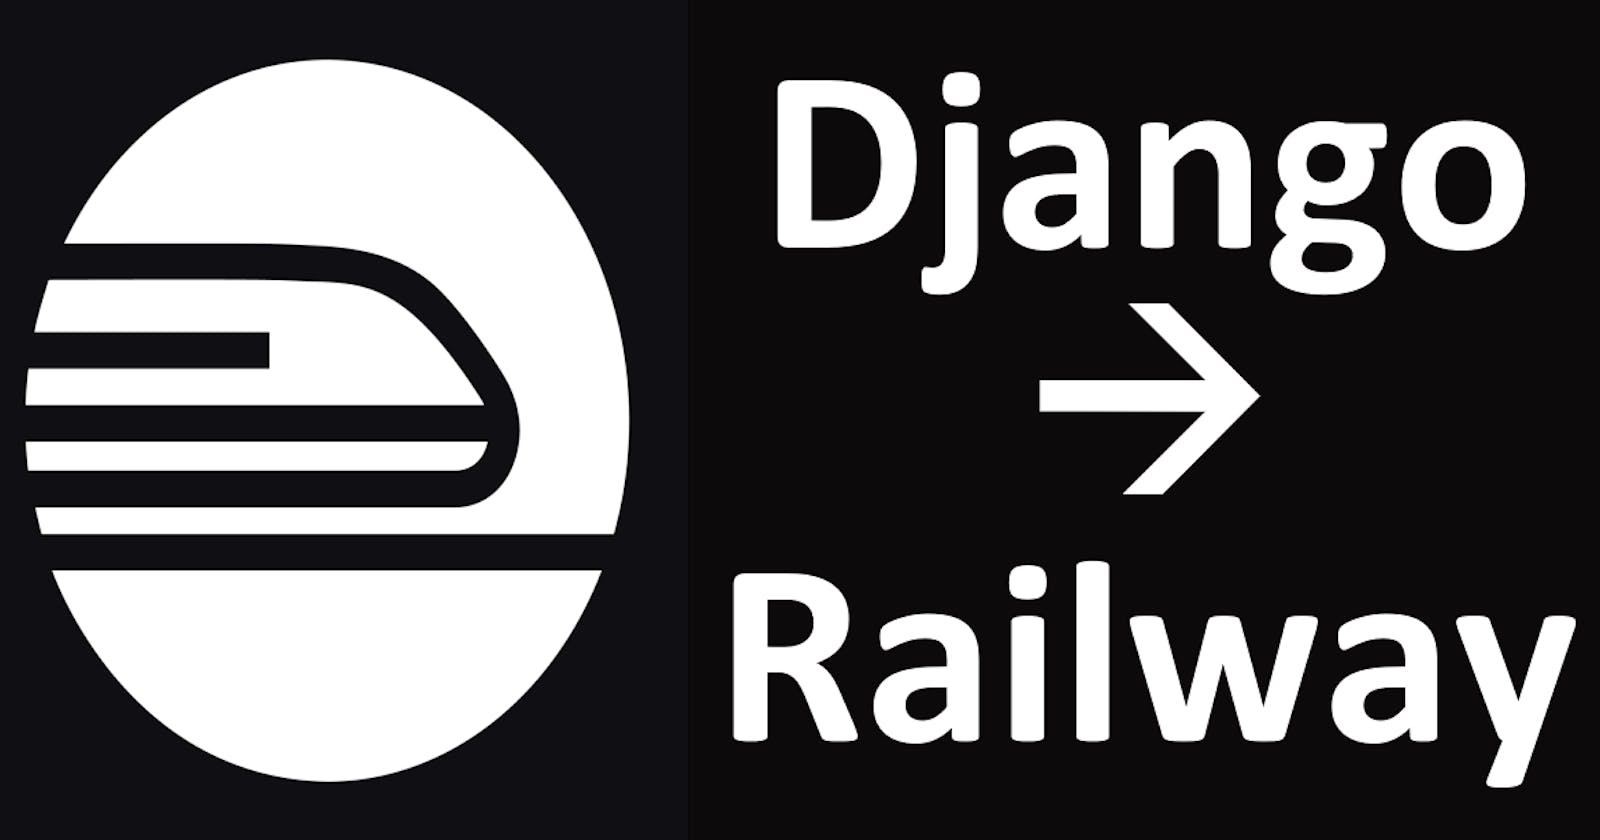 Deploying your Django app on Railway